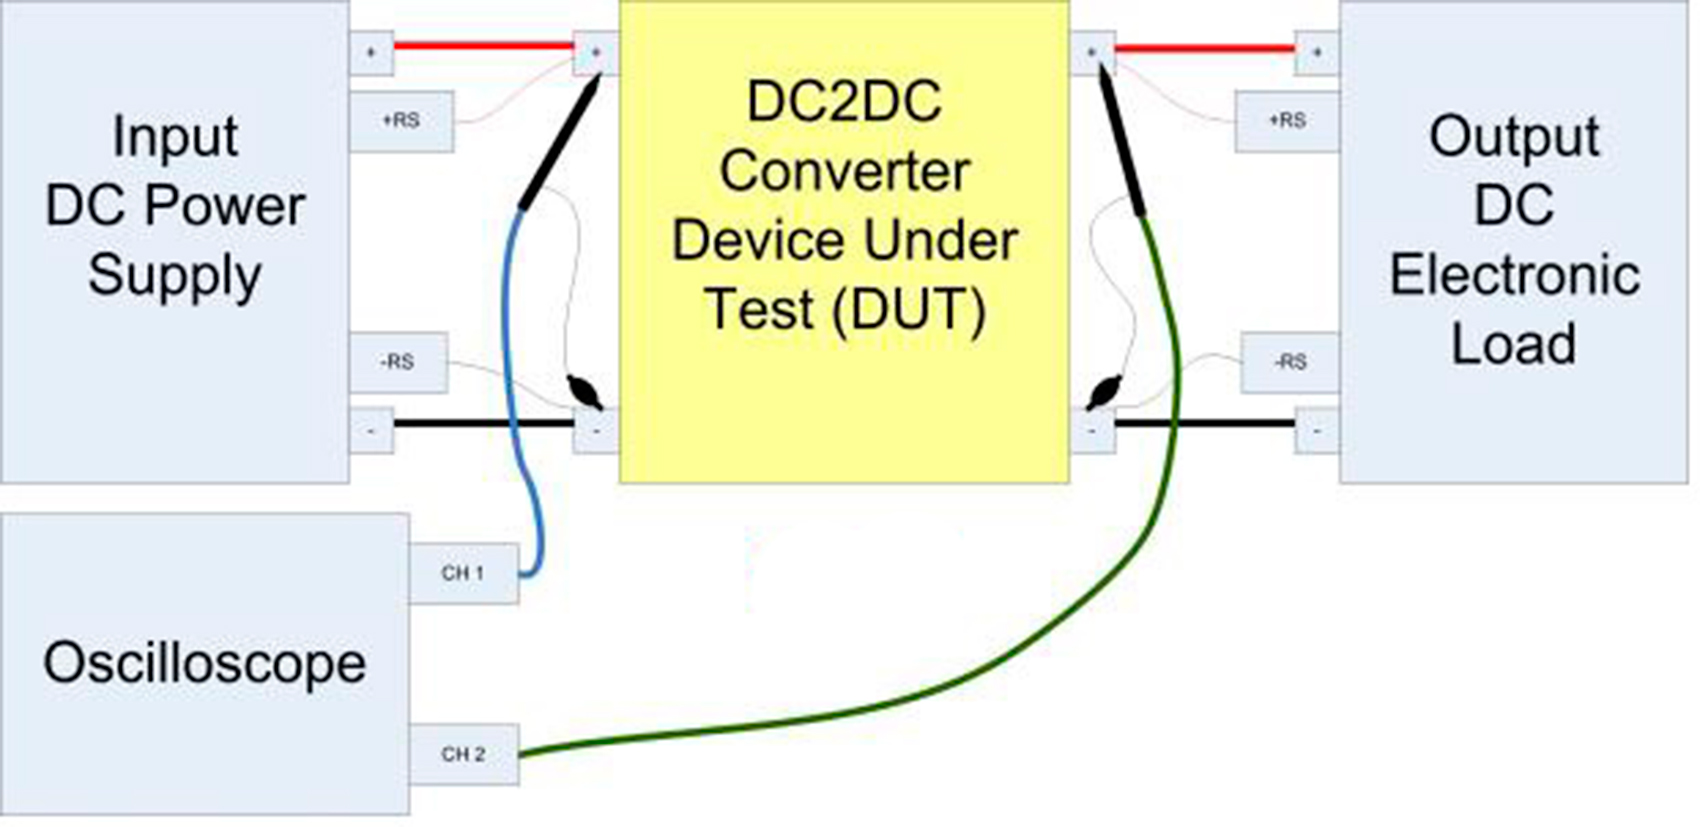 El convertidor DC2DC se enciende usando el voltaje nominal de entrada y aplicando la mxima corriente o potencia de salida especificada usando la...